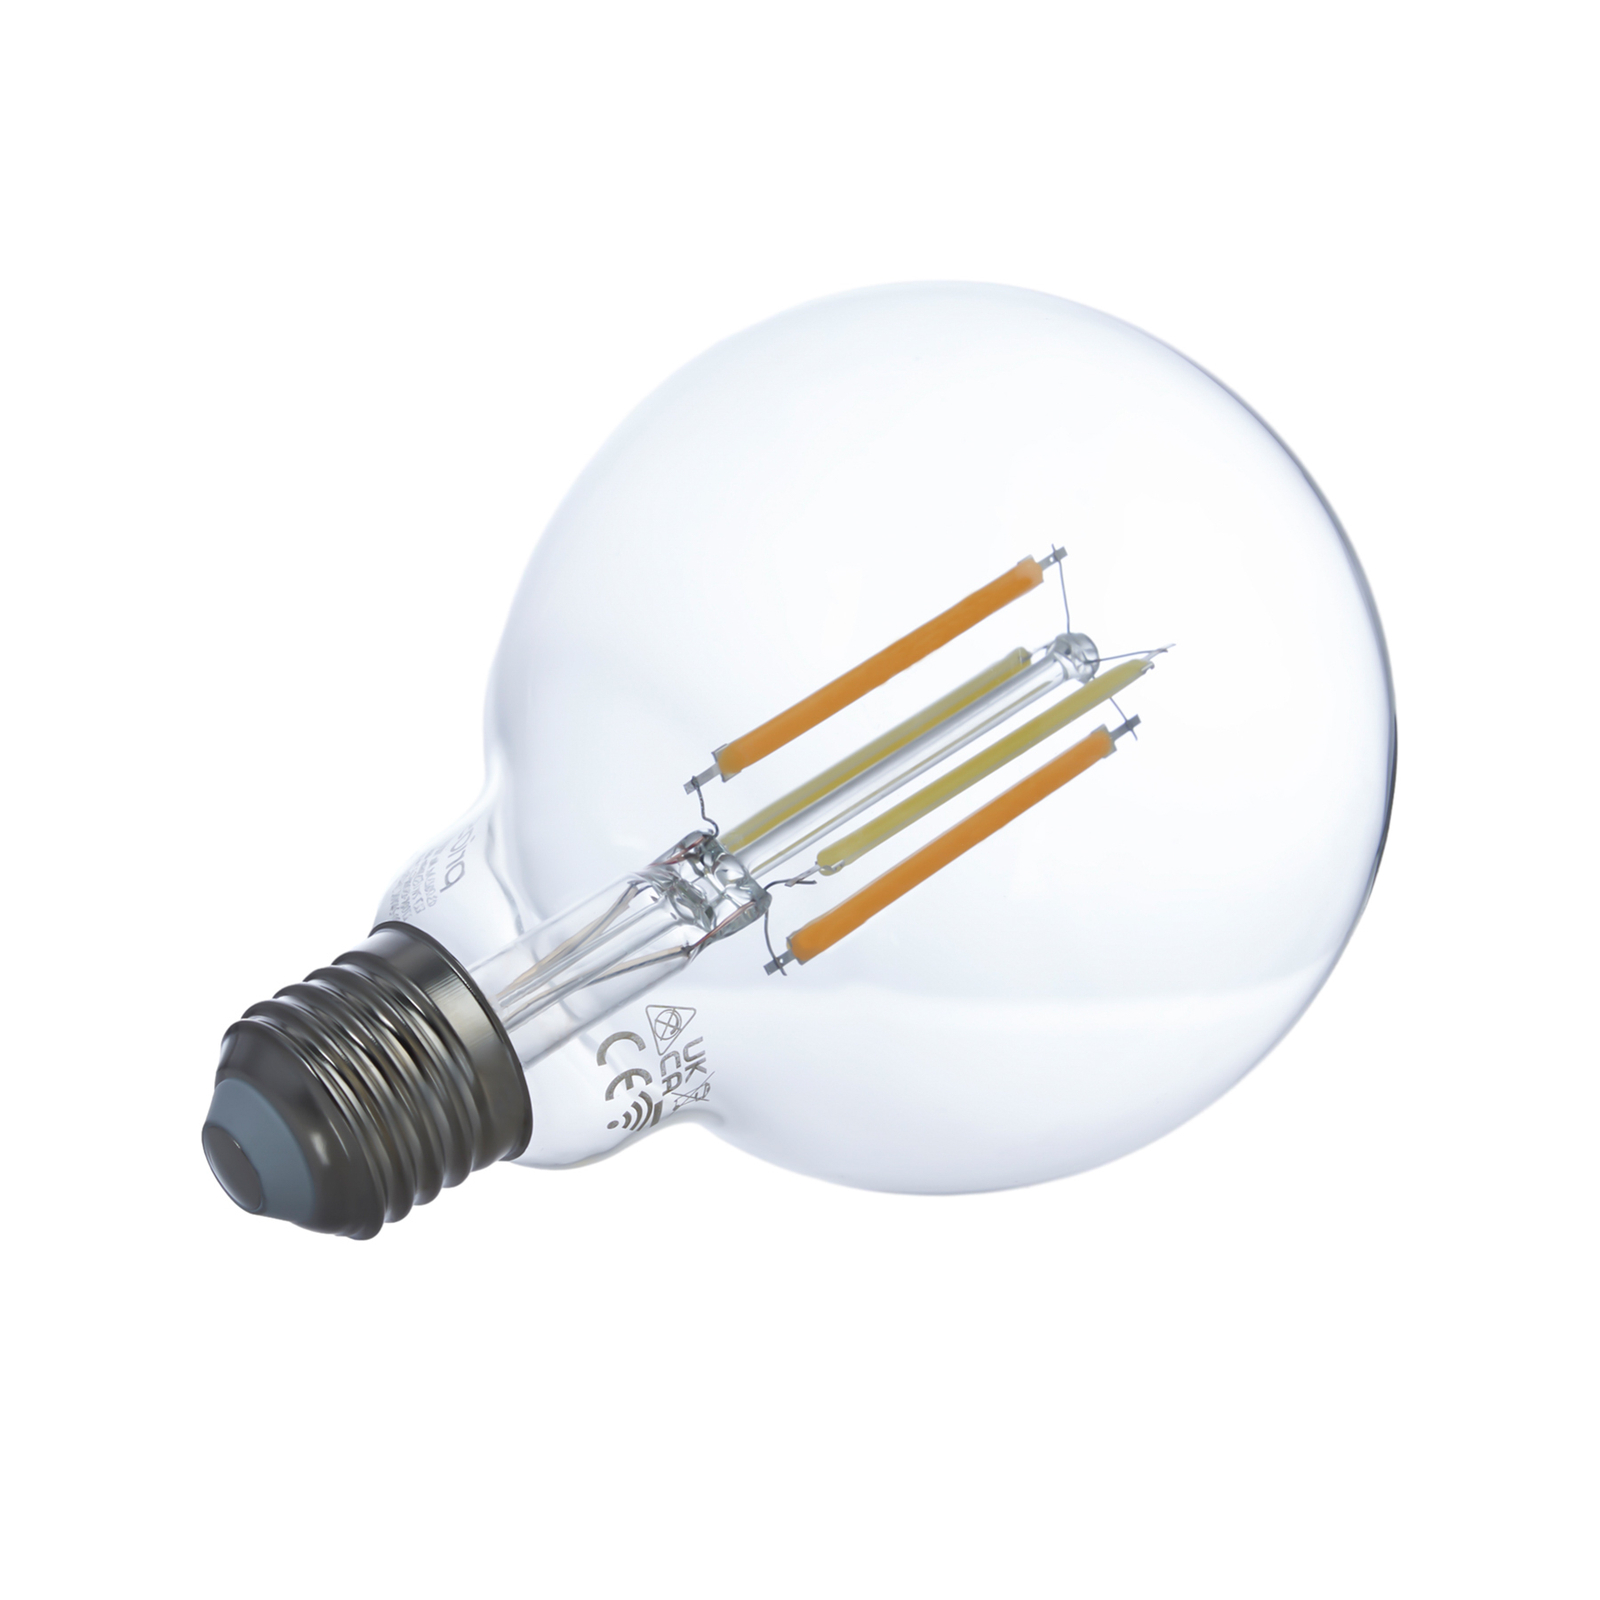 Smart LED E27 G95 7W WLAN čirá tunable white